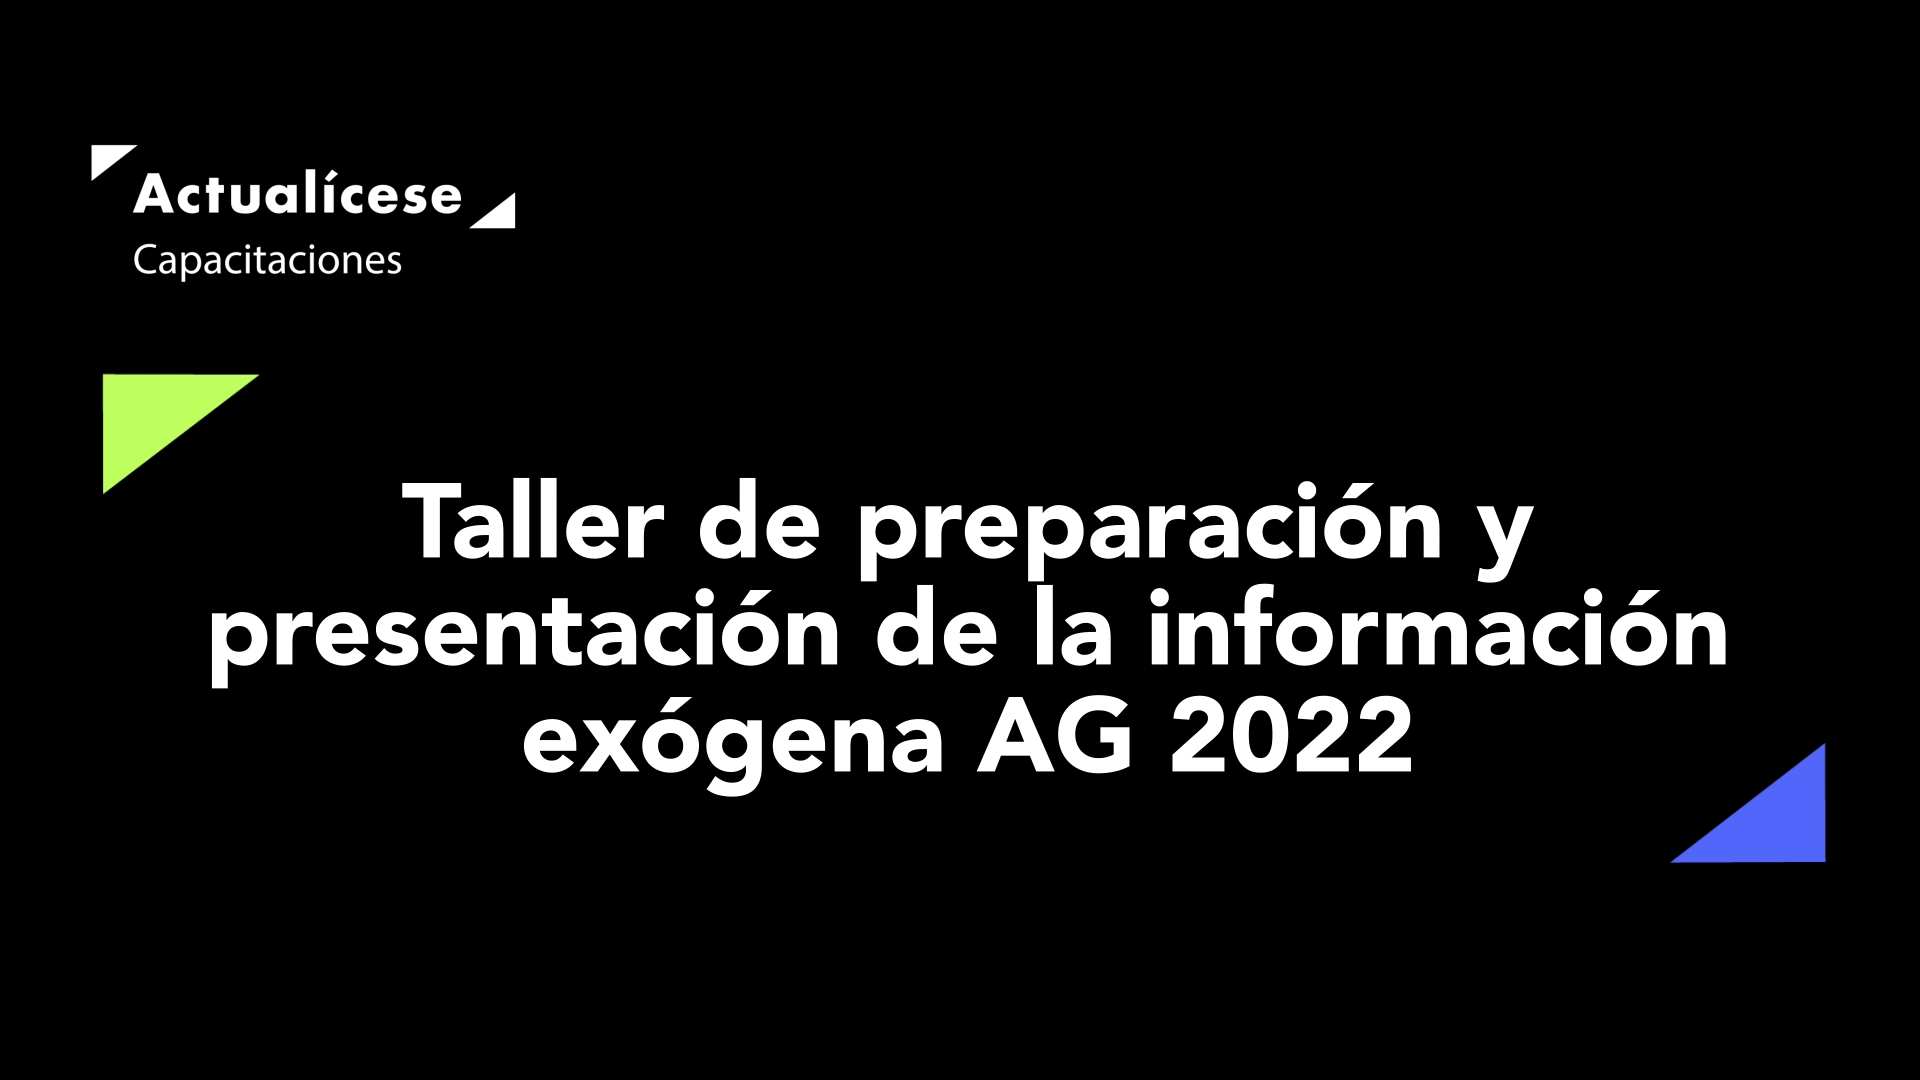 Taller de preparación y presentación de información exógena AG 2022